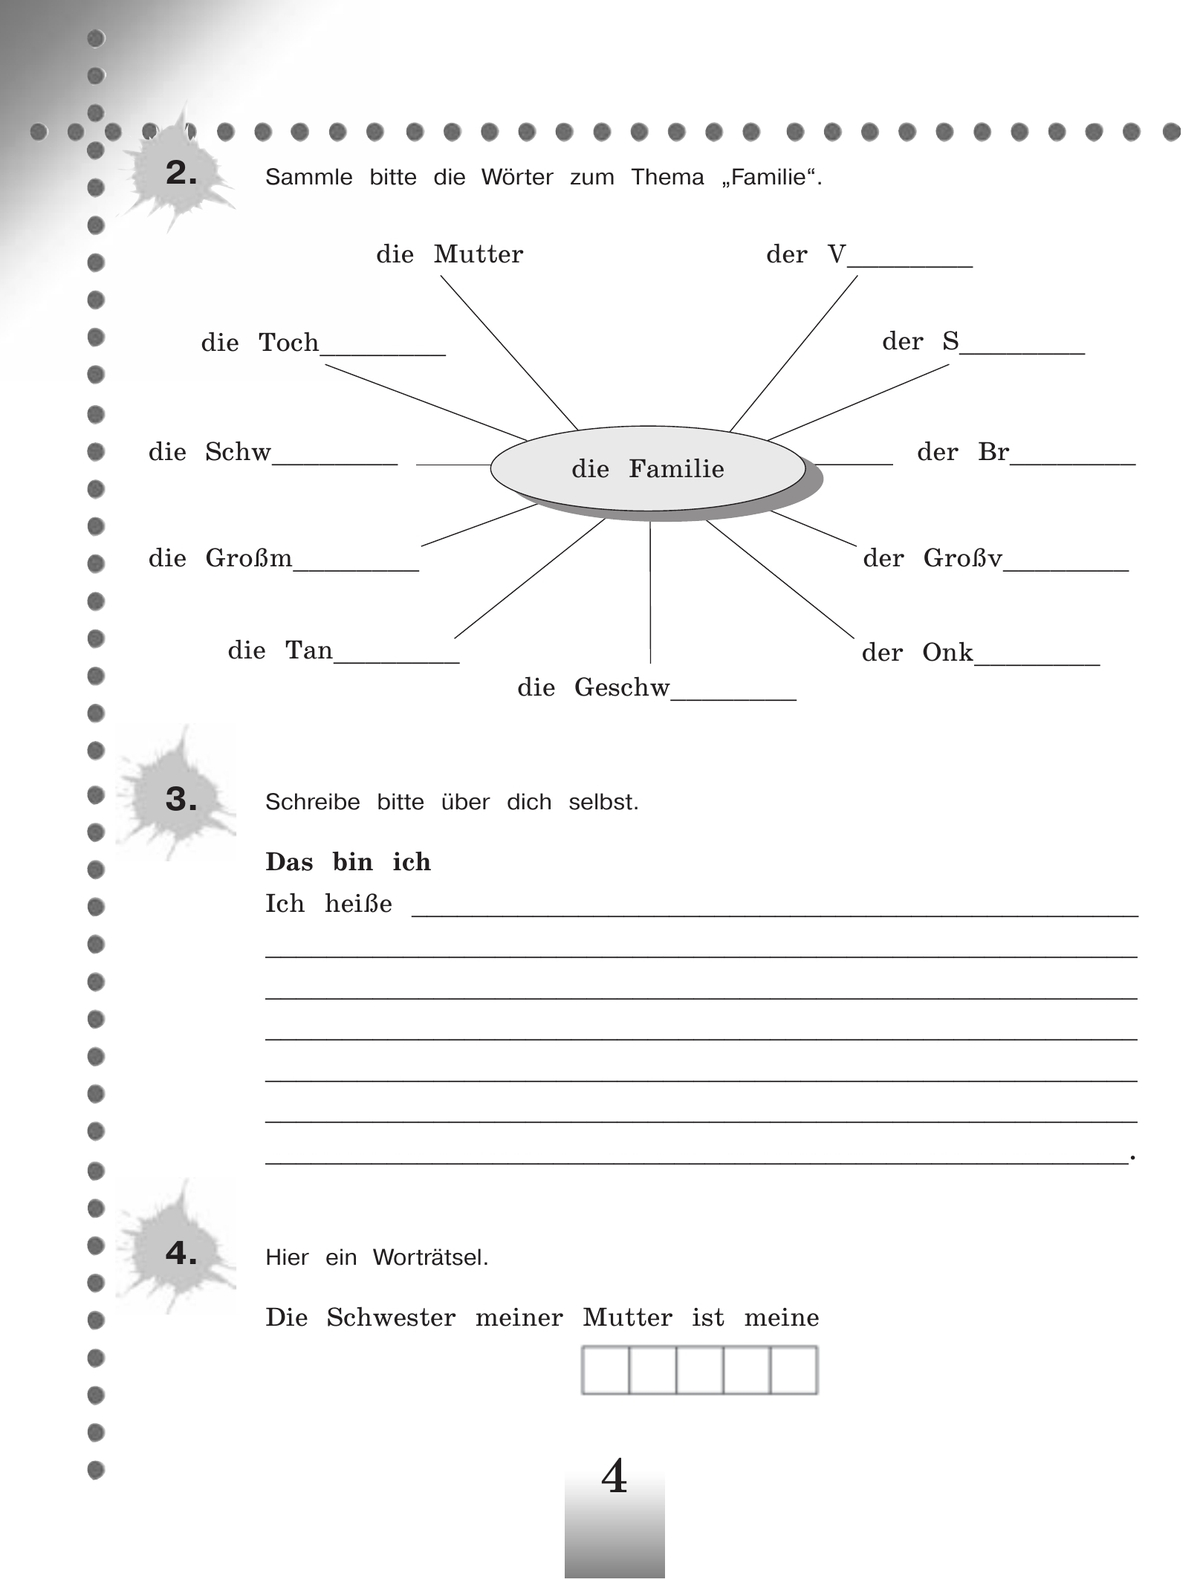 Немецкий язык. Рабочая тетрадь. 5 класс 2